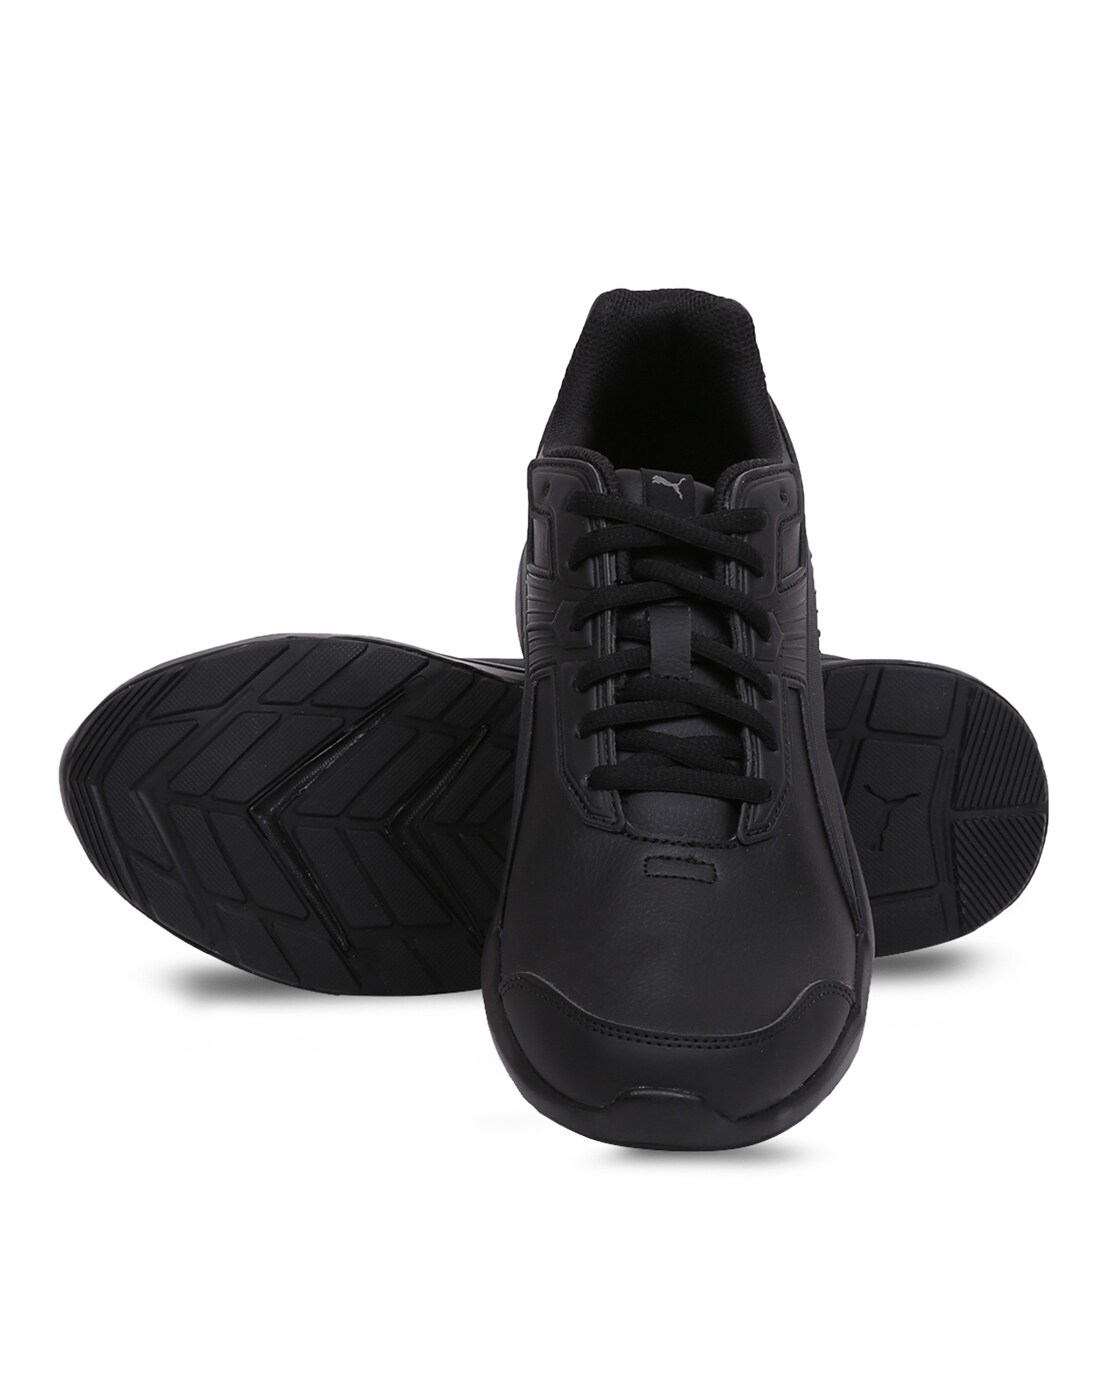 puma sneakers for men black